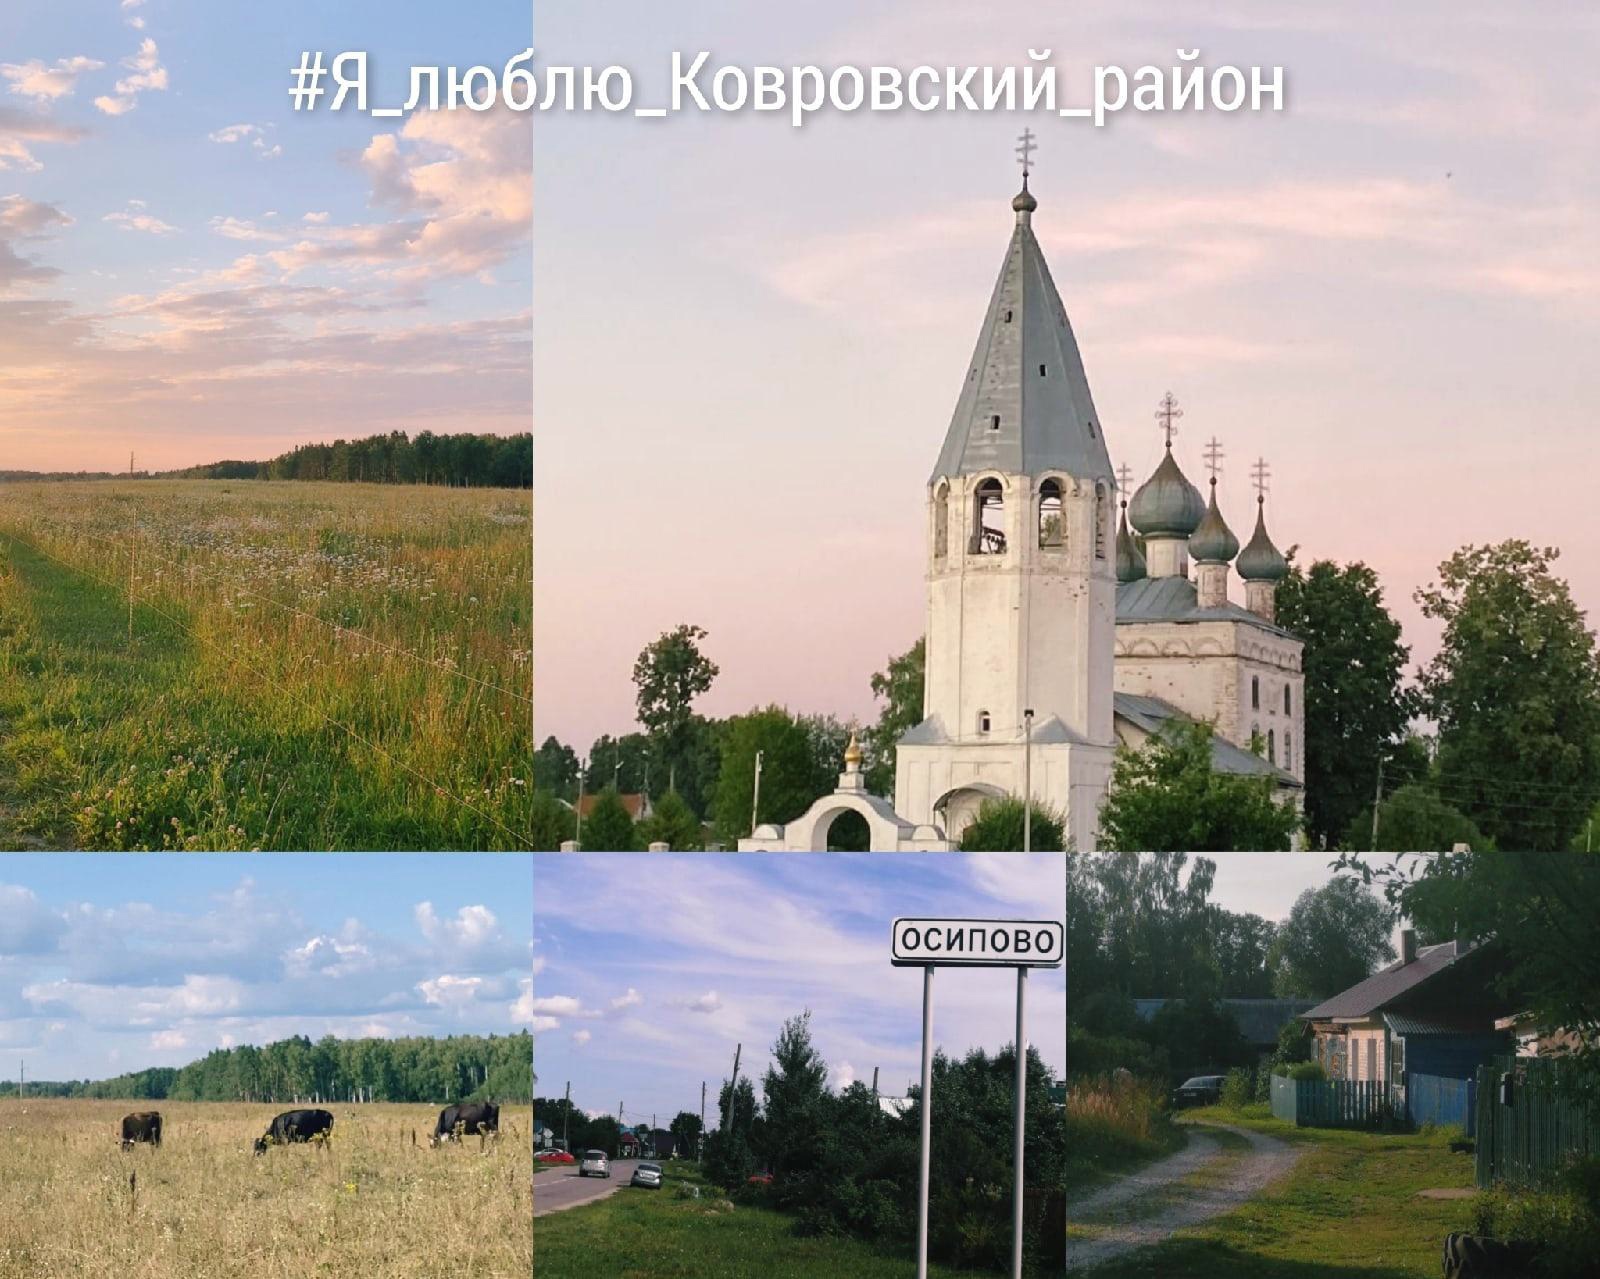 село Осипово